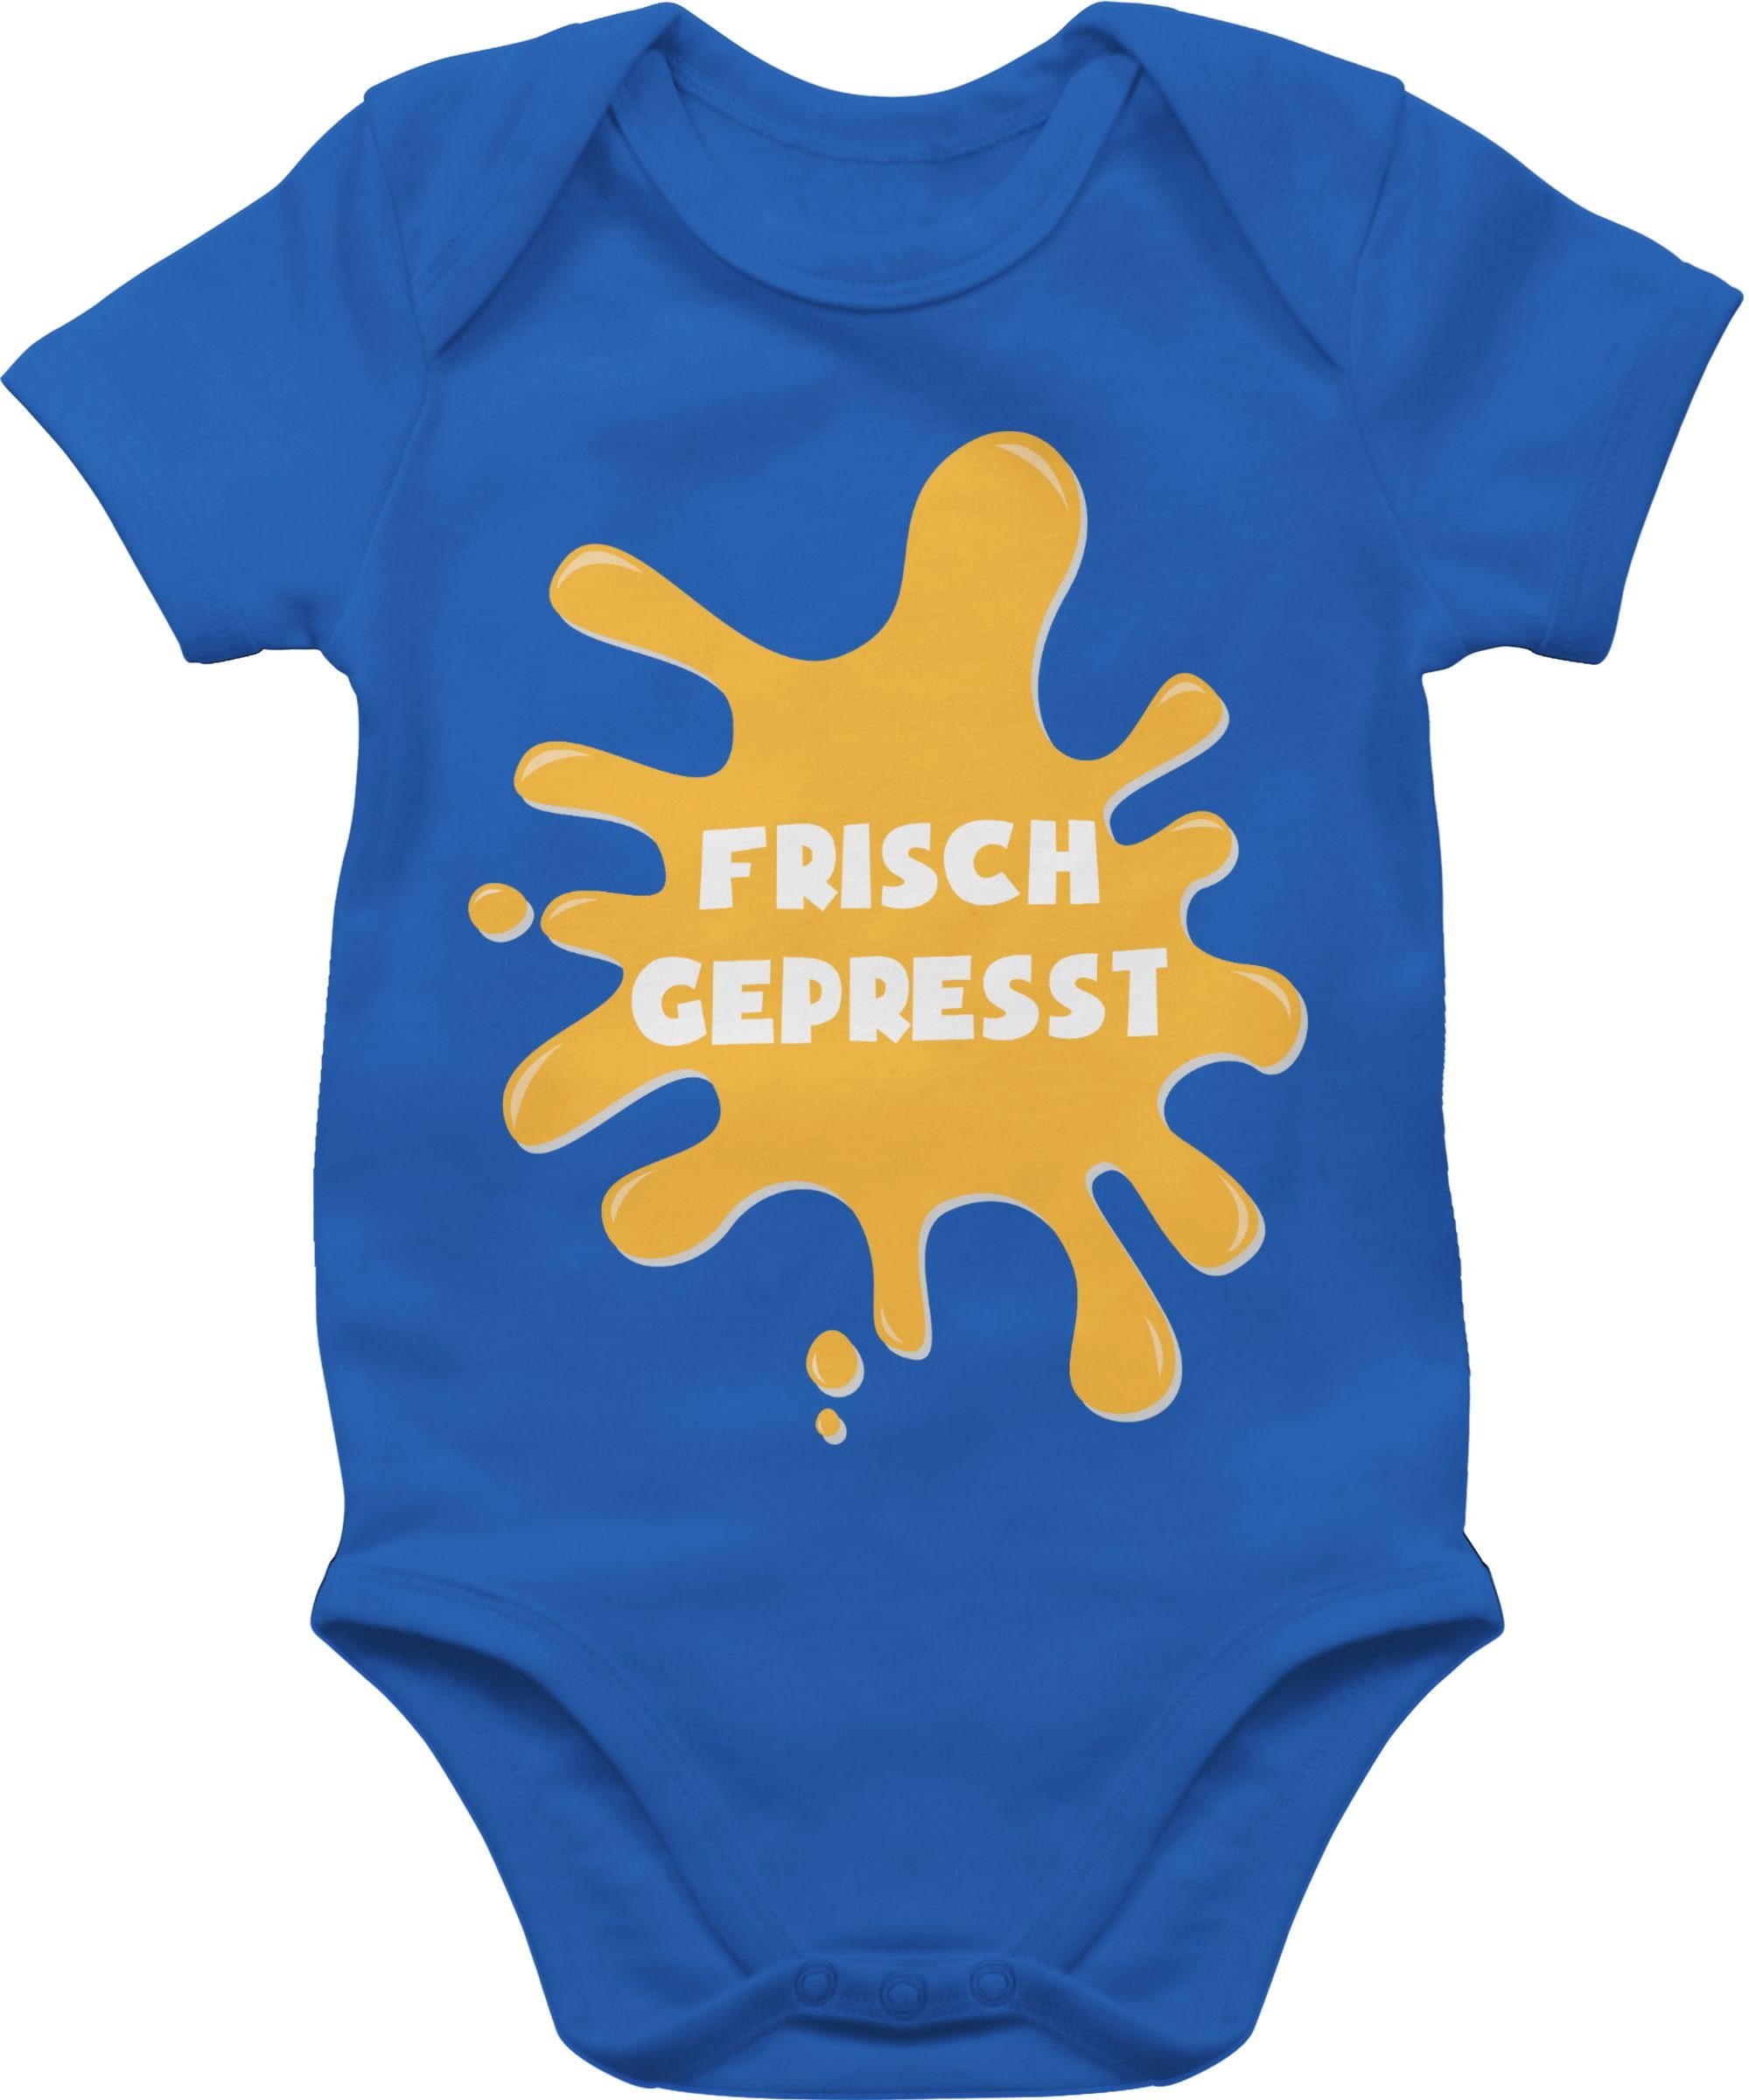 Shirtracer Shirtbody Baby - Frisch gepresst - Geburt Geschenke für Baby -  Baby Body Kurzarm strampler frisch gepresst - baby body spruch